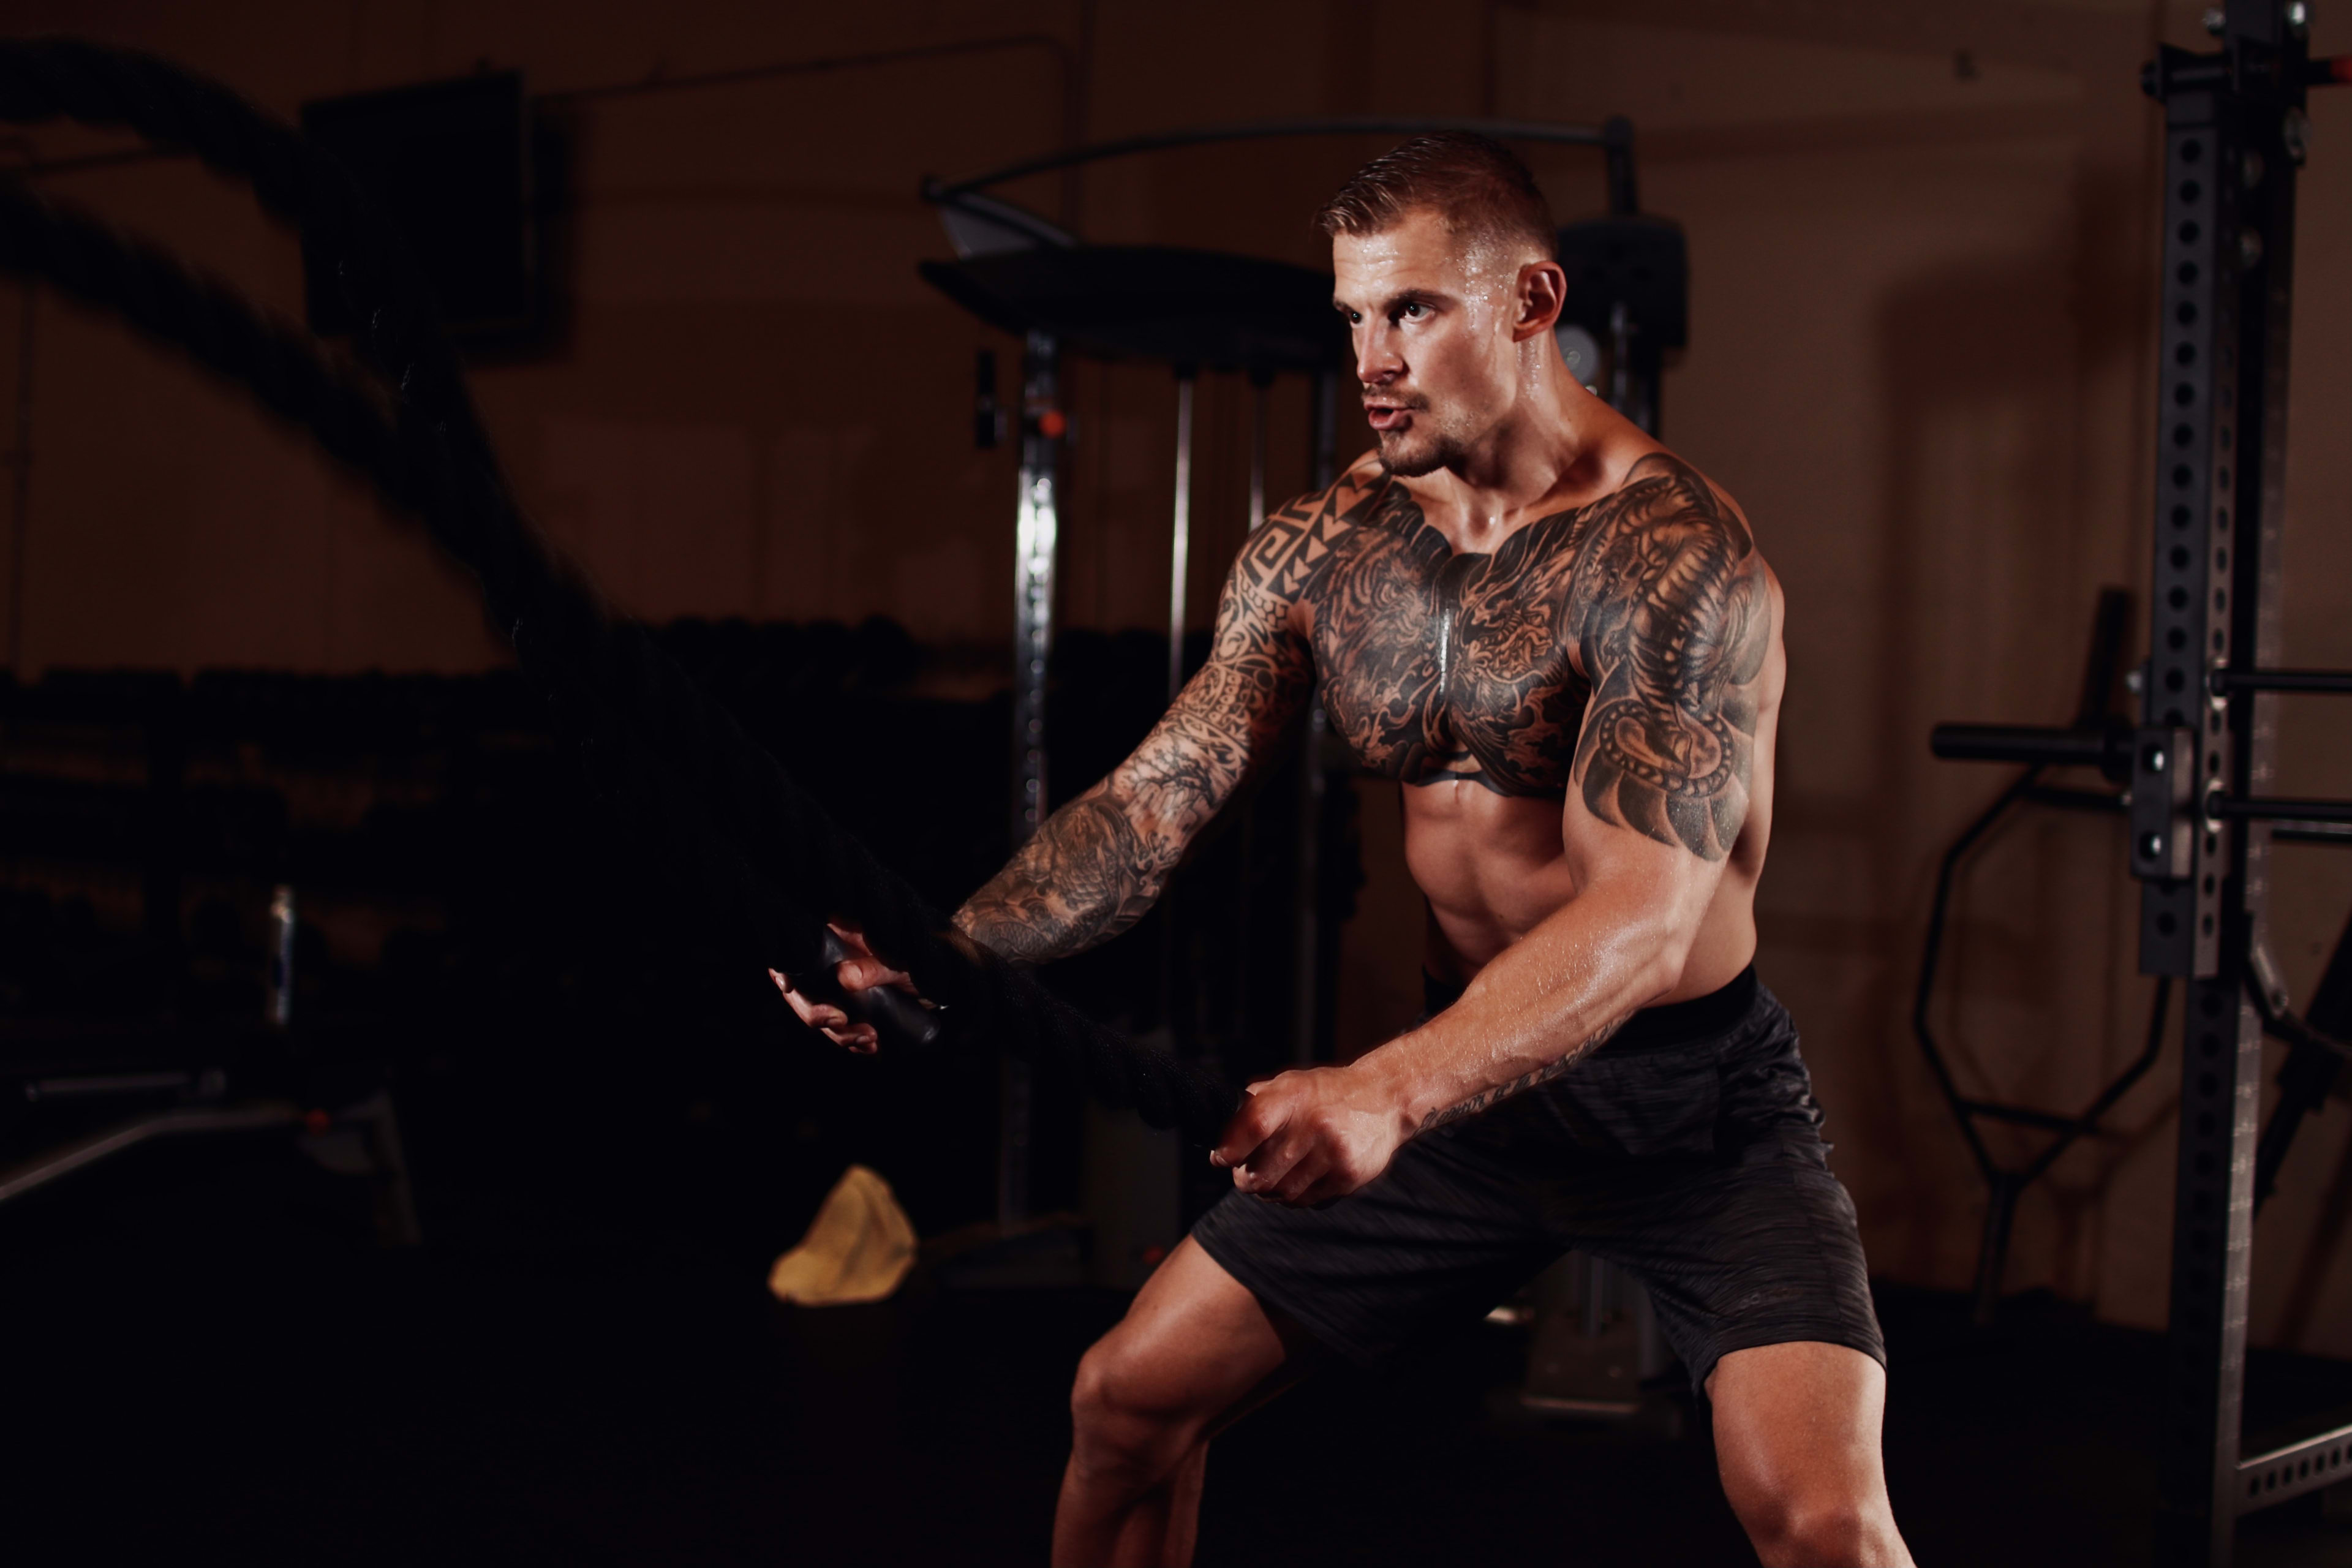 Ein Mann mit einer Tätowierung auf dem Arm posiert für ein Fitness-Fotoshooting.